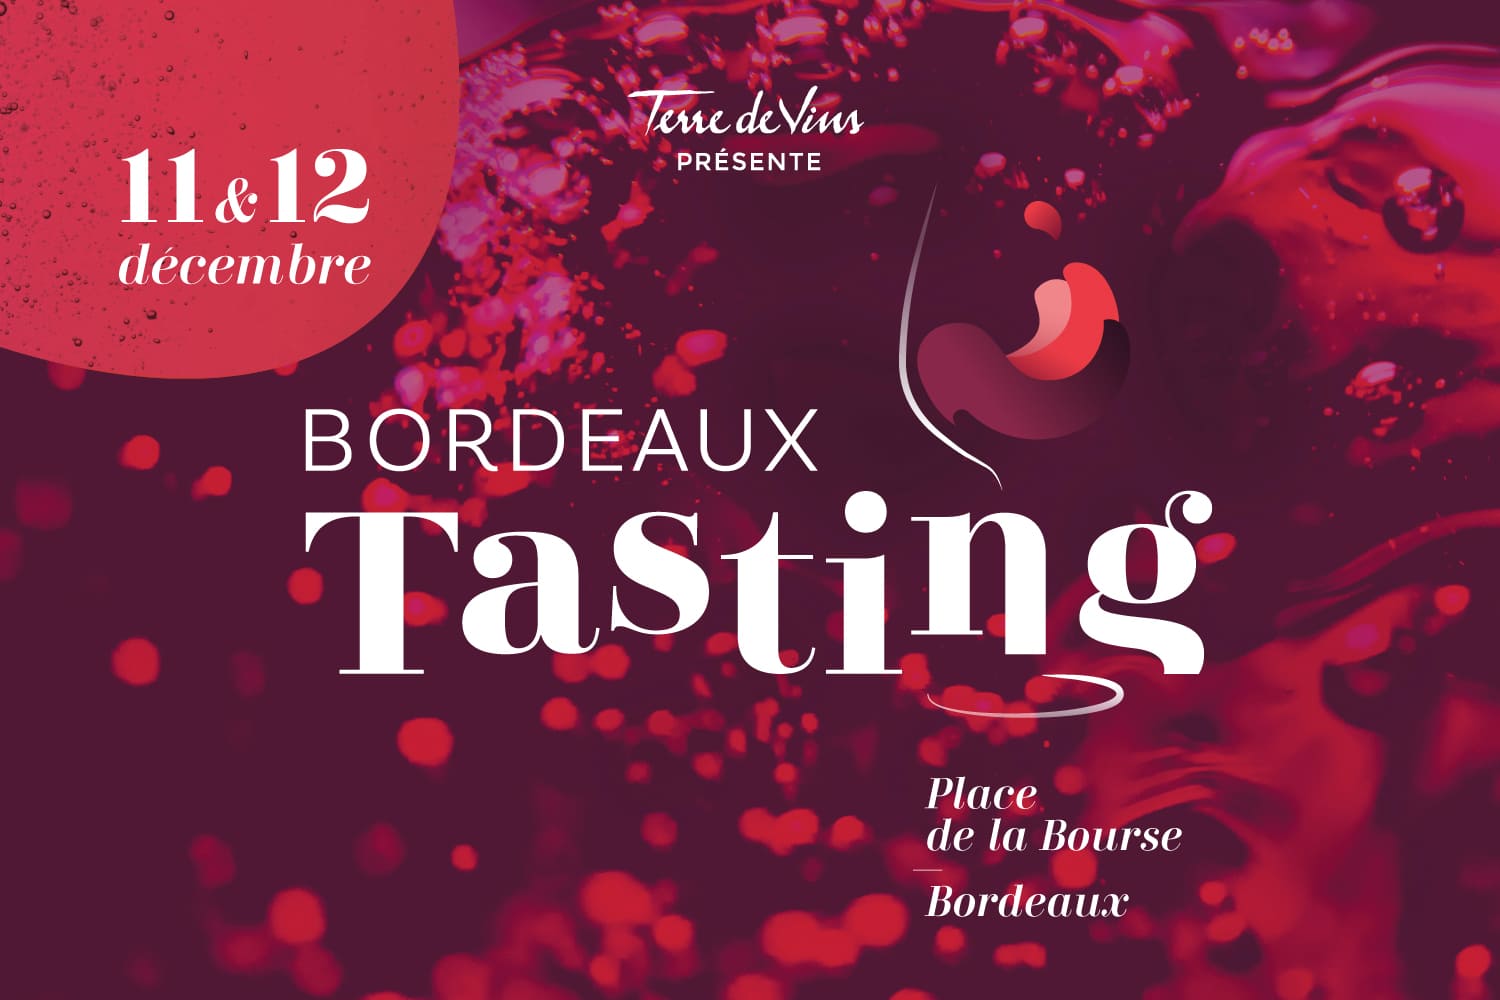 Bordeaux Tasting 2021 fête ses 10 ans !